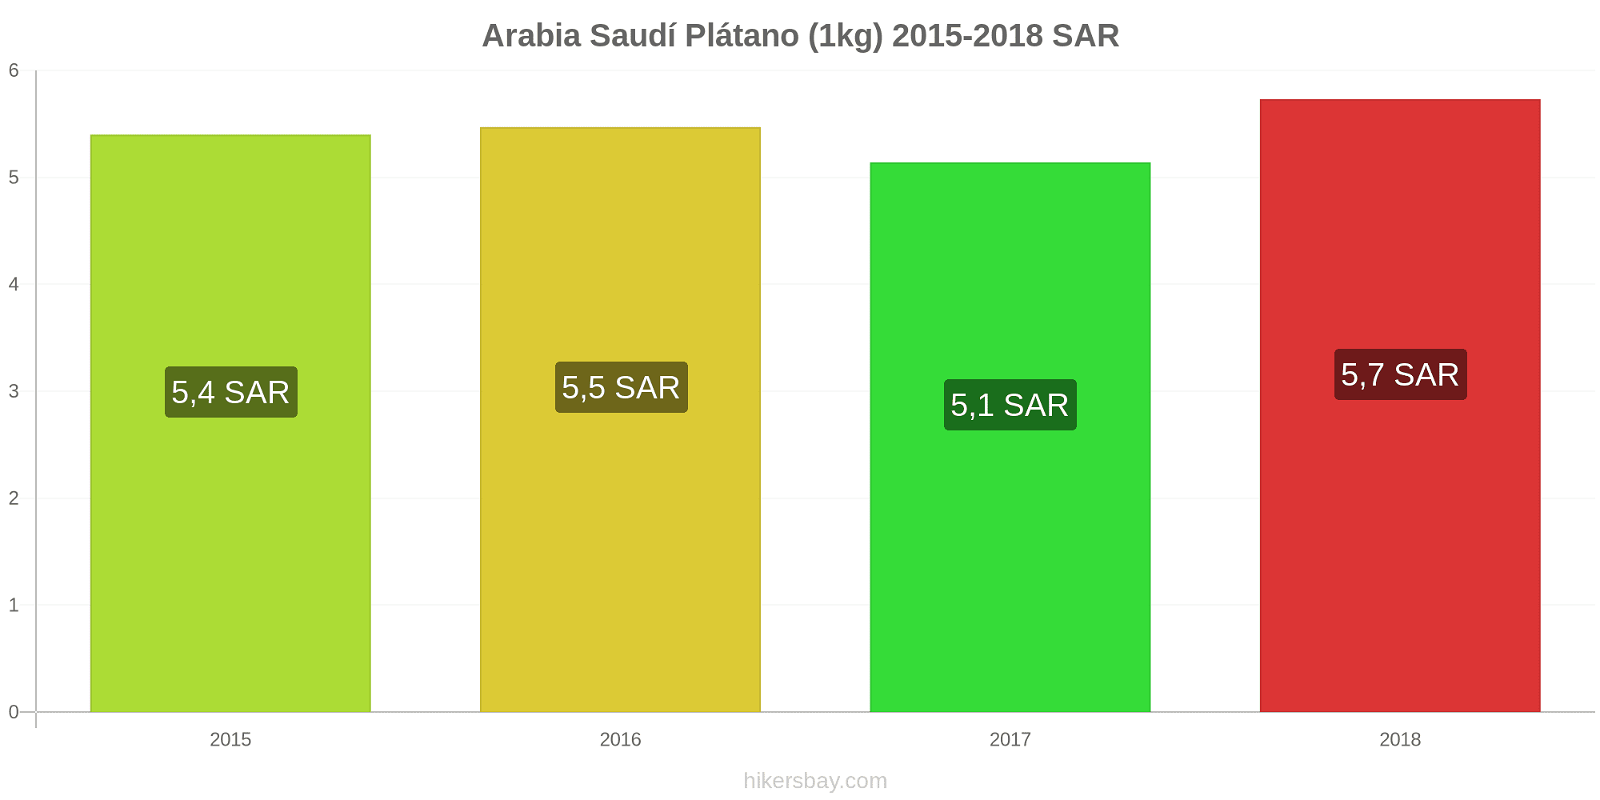 Arabia Saudí cambios de precios Plátanos (1kg) hikersbay.com